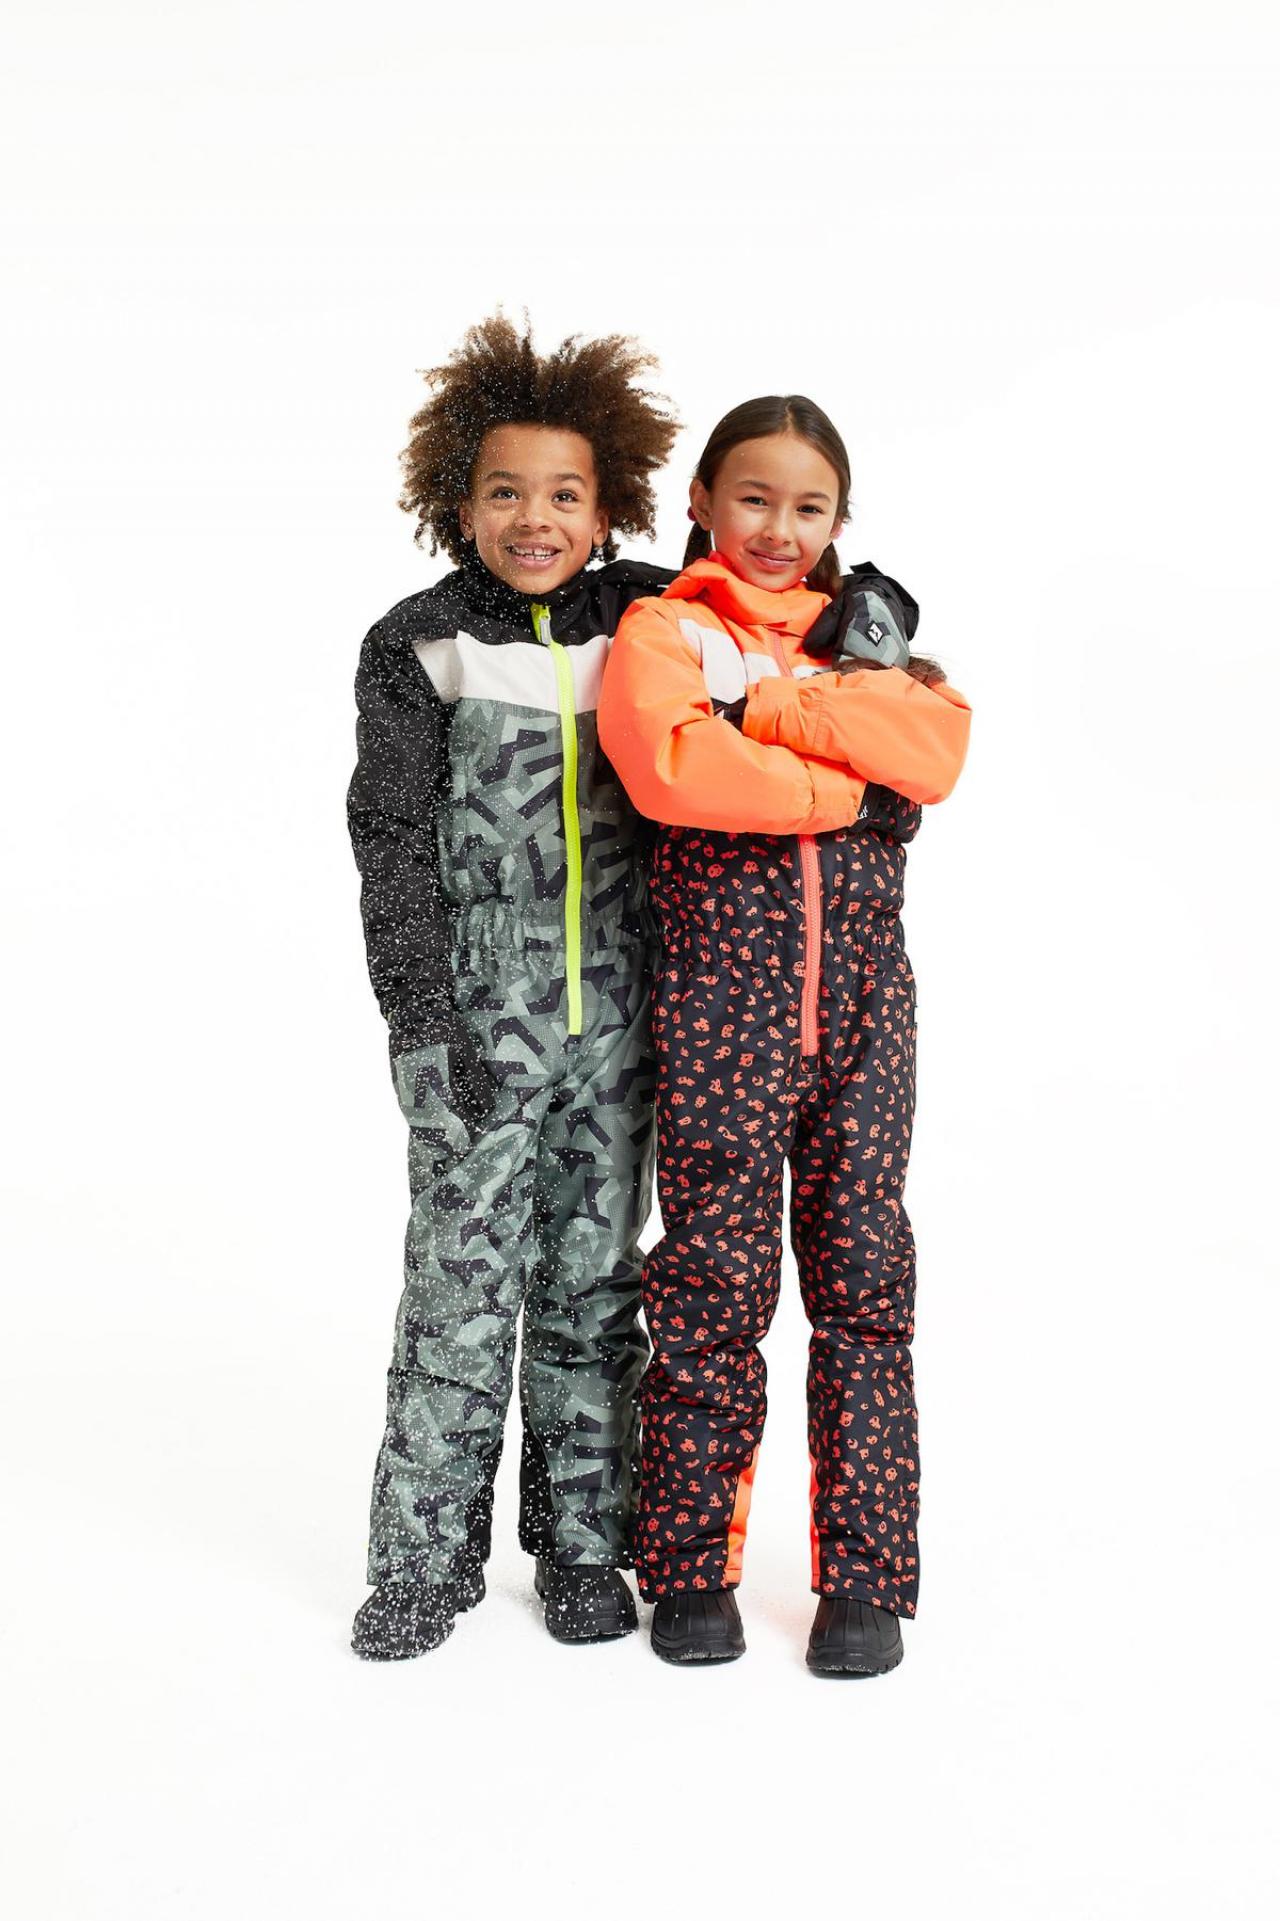 Betaalbare skioutfits voor kids, van maat 92 tot maat 176. De prijzen variëren van 12 euro voor een nekwarmer tot 90 euro voor een skipak, van We Fashion.